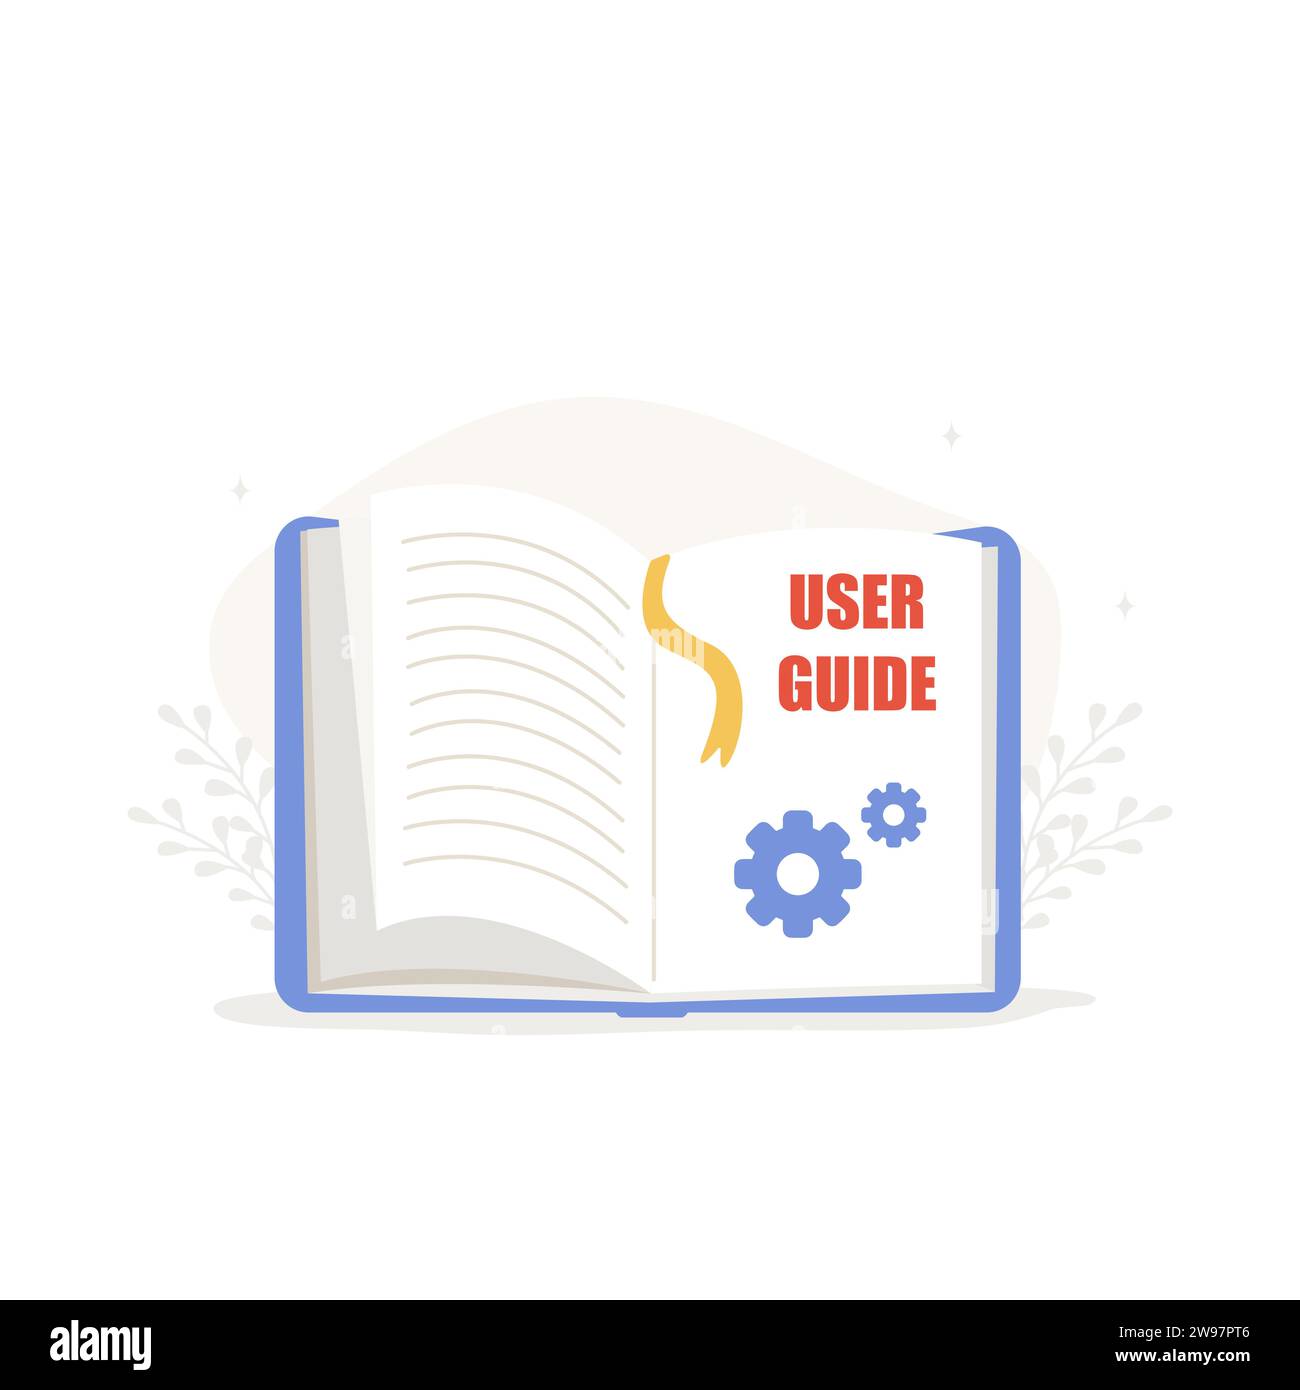 Guide dell'utente. Aprire l'icona della guida. Manuale dell'utente e istruzioni. Illustrazione vettoriale in stile cartone animato piatto Illustrazione Vettoriale